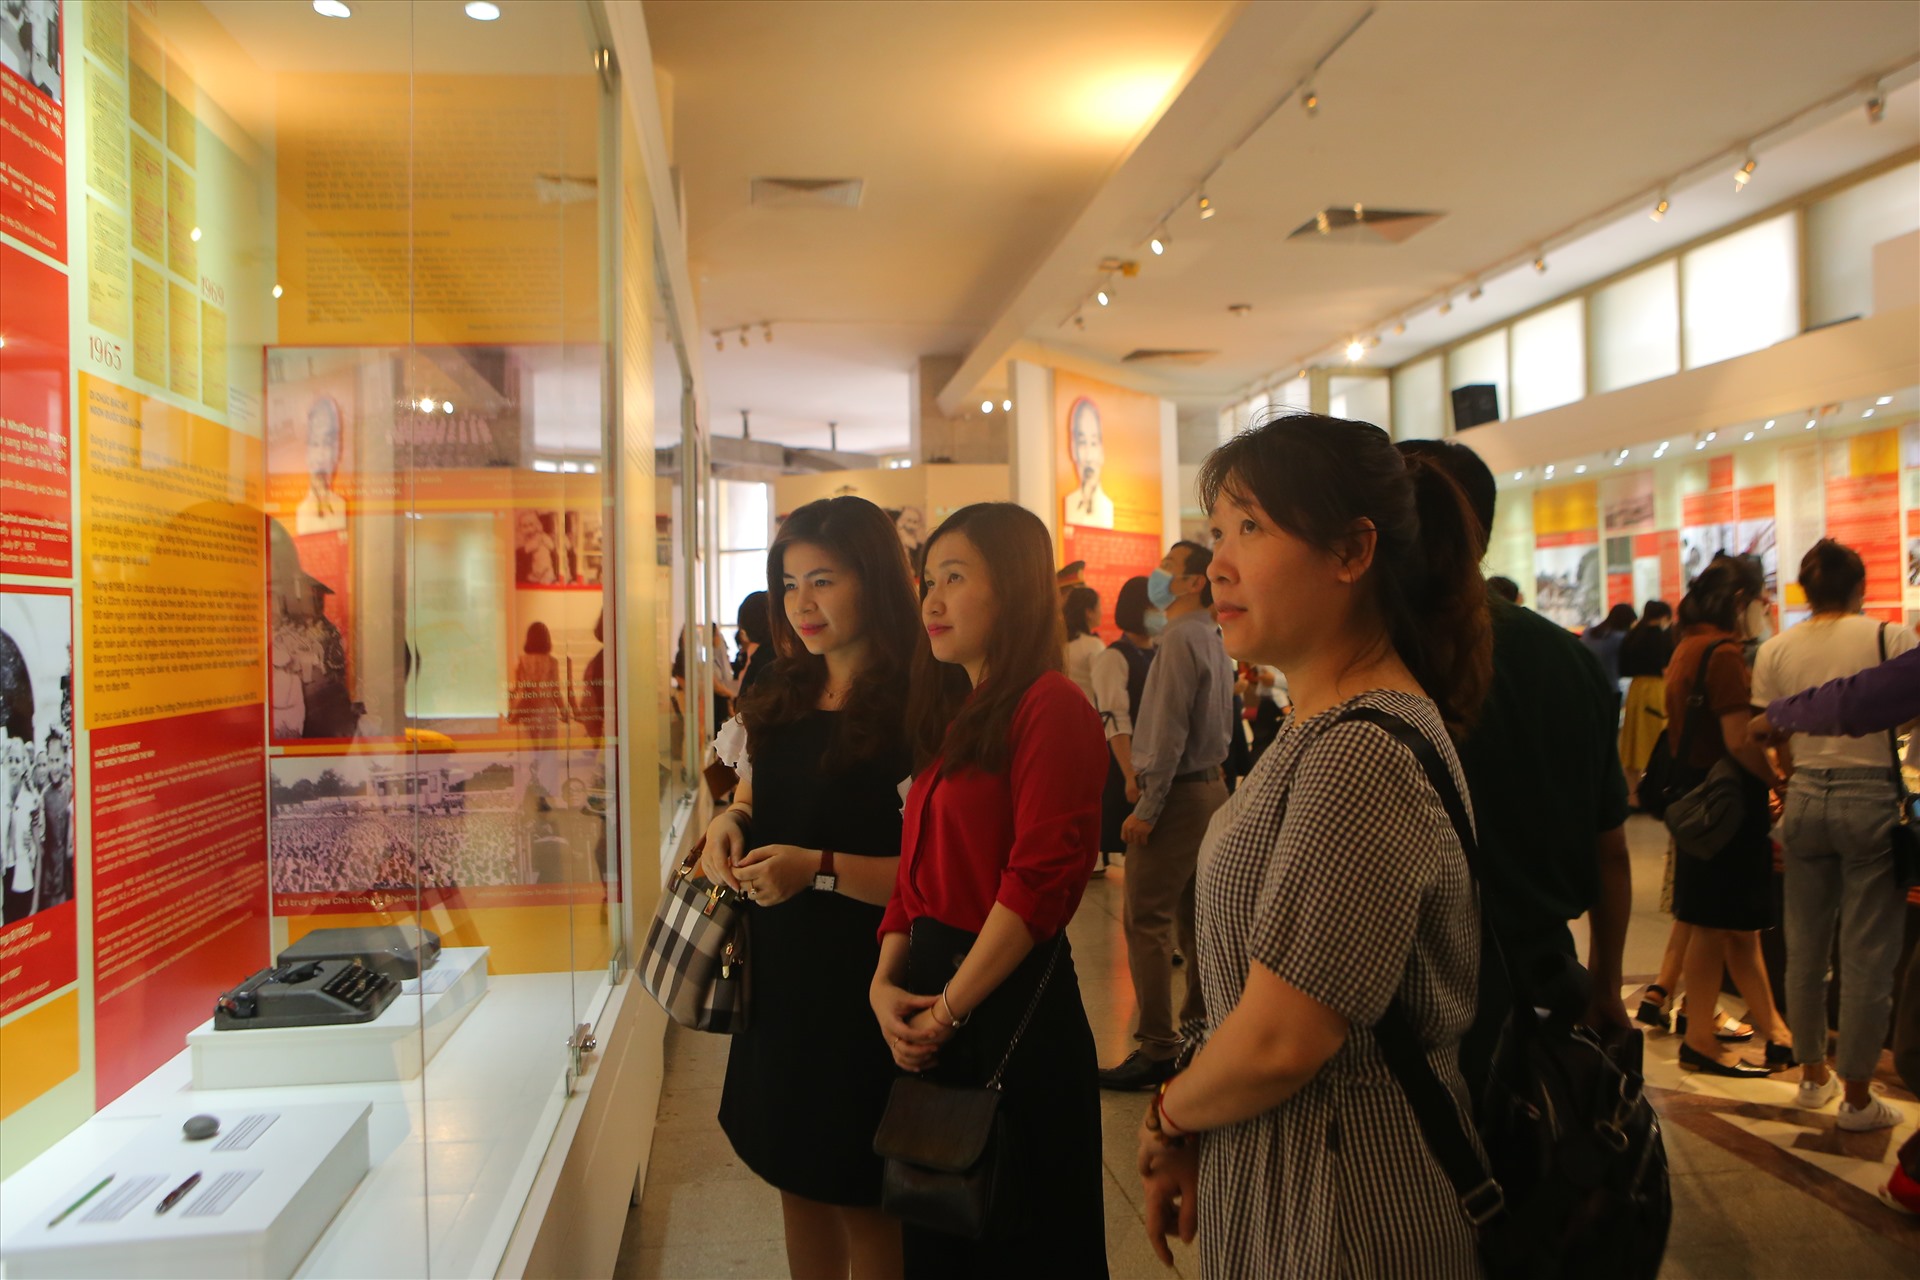 Đến với bảo tàng trong những ngày này, khách tham quan sẽ được chứng kiến nhiều hiện vật và tư liệu quý giá gắn với cuộc đời và sự nghiệp của Chủ tịch Hồ Chí Minh. Ảnh: Hoan Cường